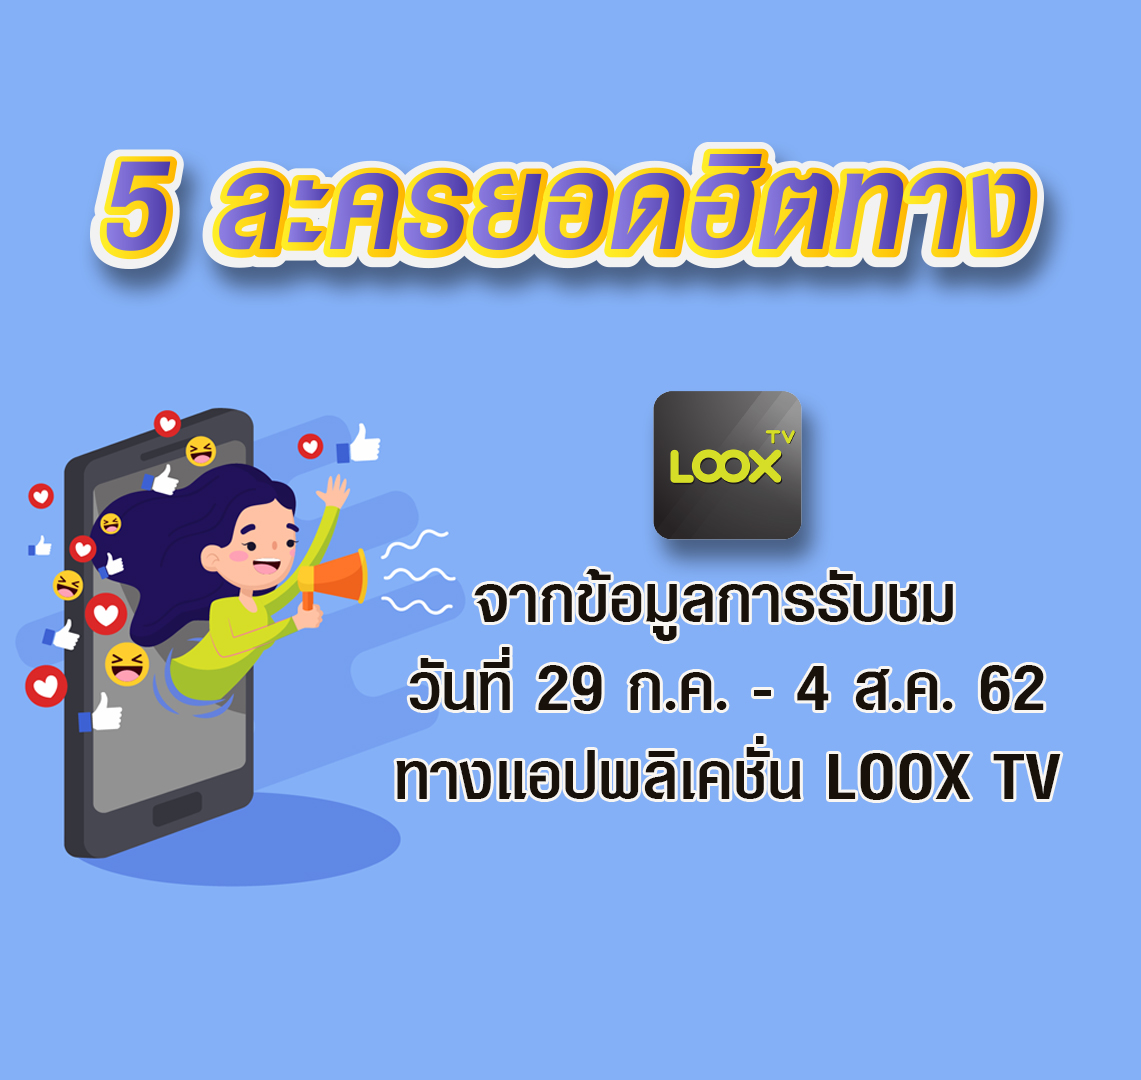 LOOX TV เรตติ้ง 29 ก.ค.- 4 ส.ค. 62